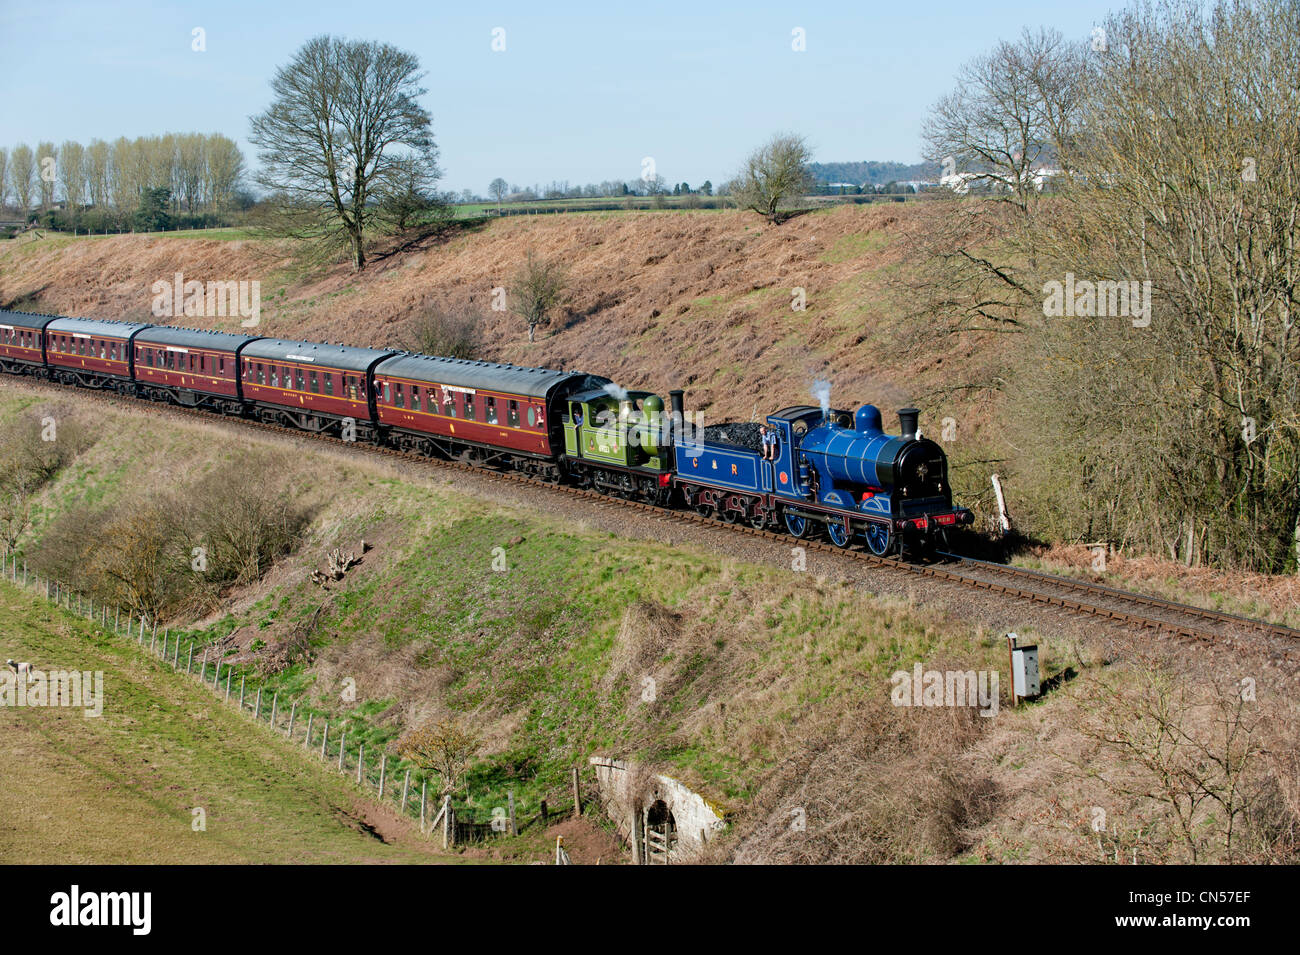 A double-headed train, led by Caledonian Railway Company Locomotive No.828 on the  Severn Valley Railway at Eardington near Bridgnorth, Shropshire, UK Stock Photo